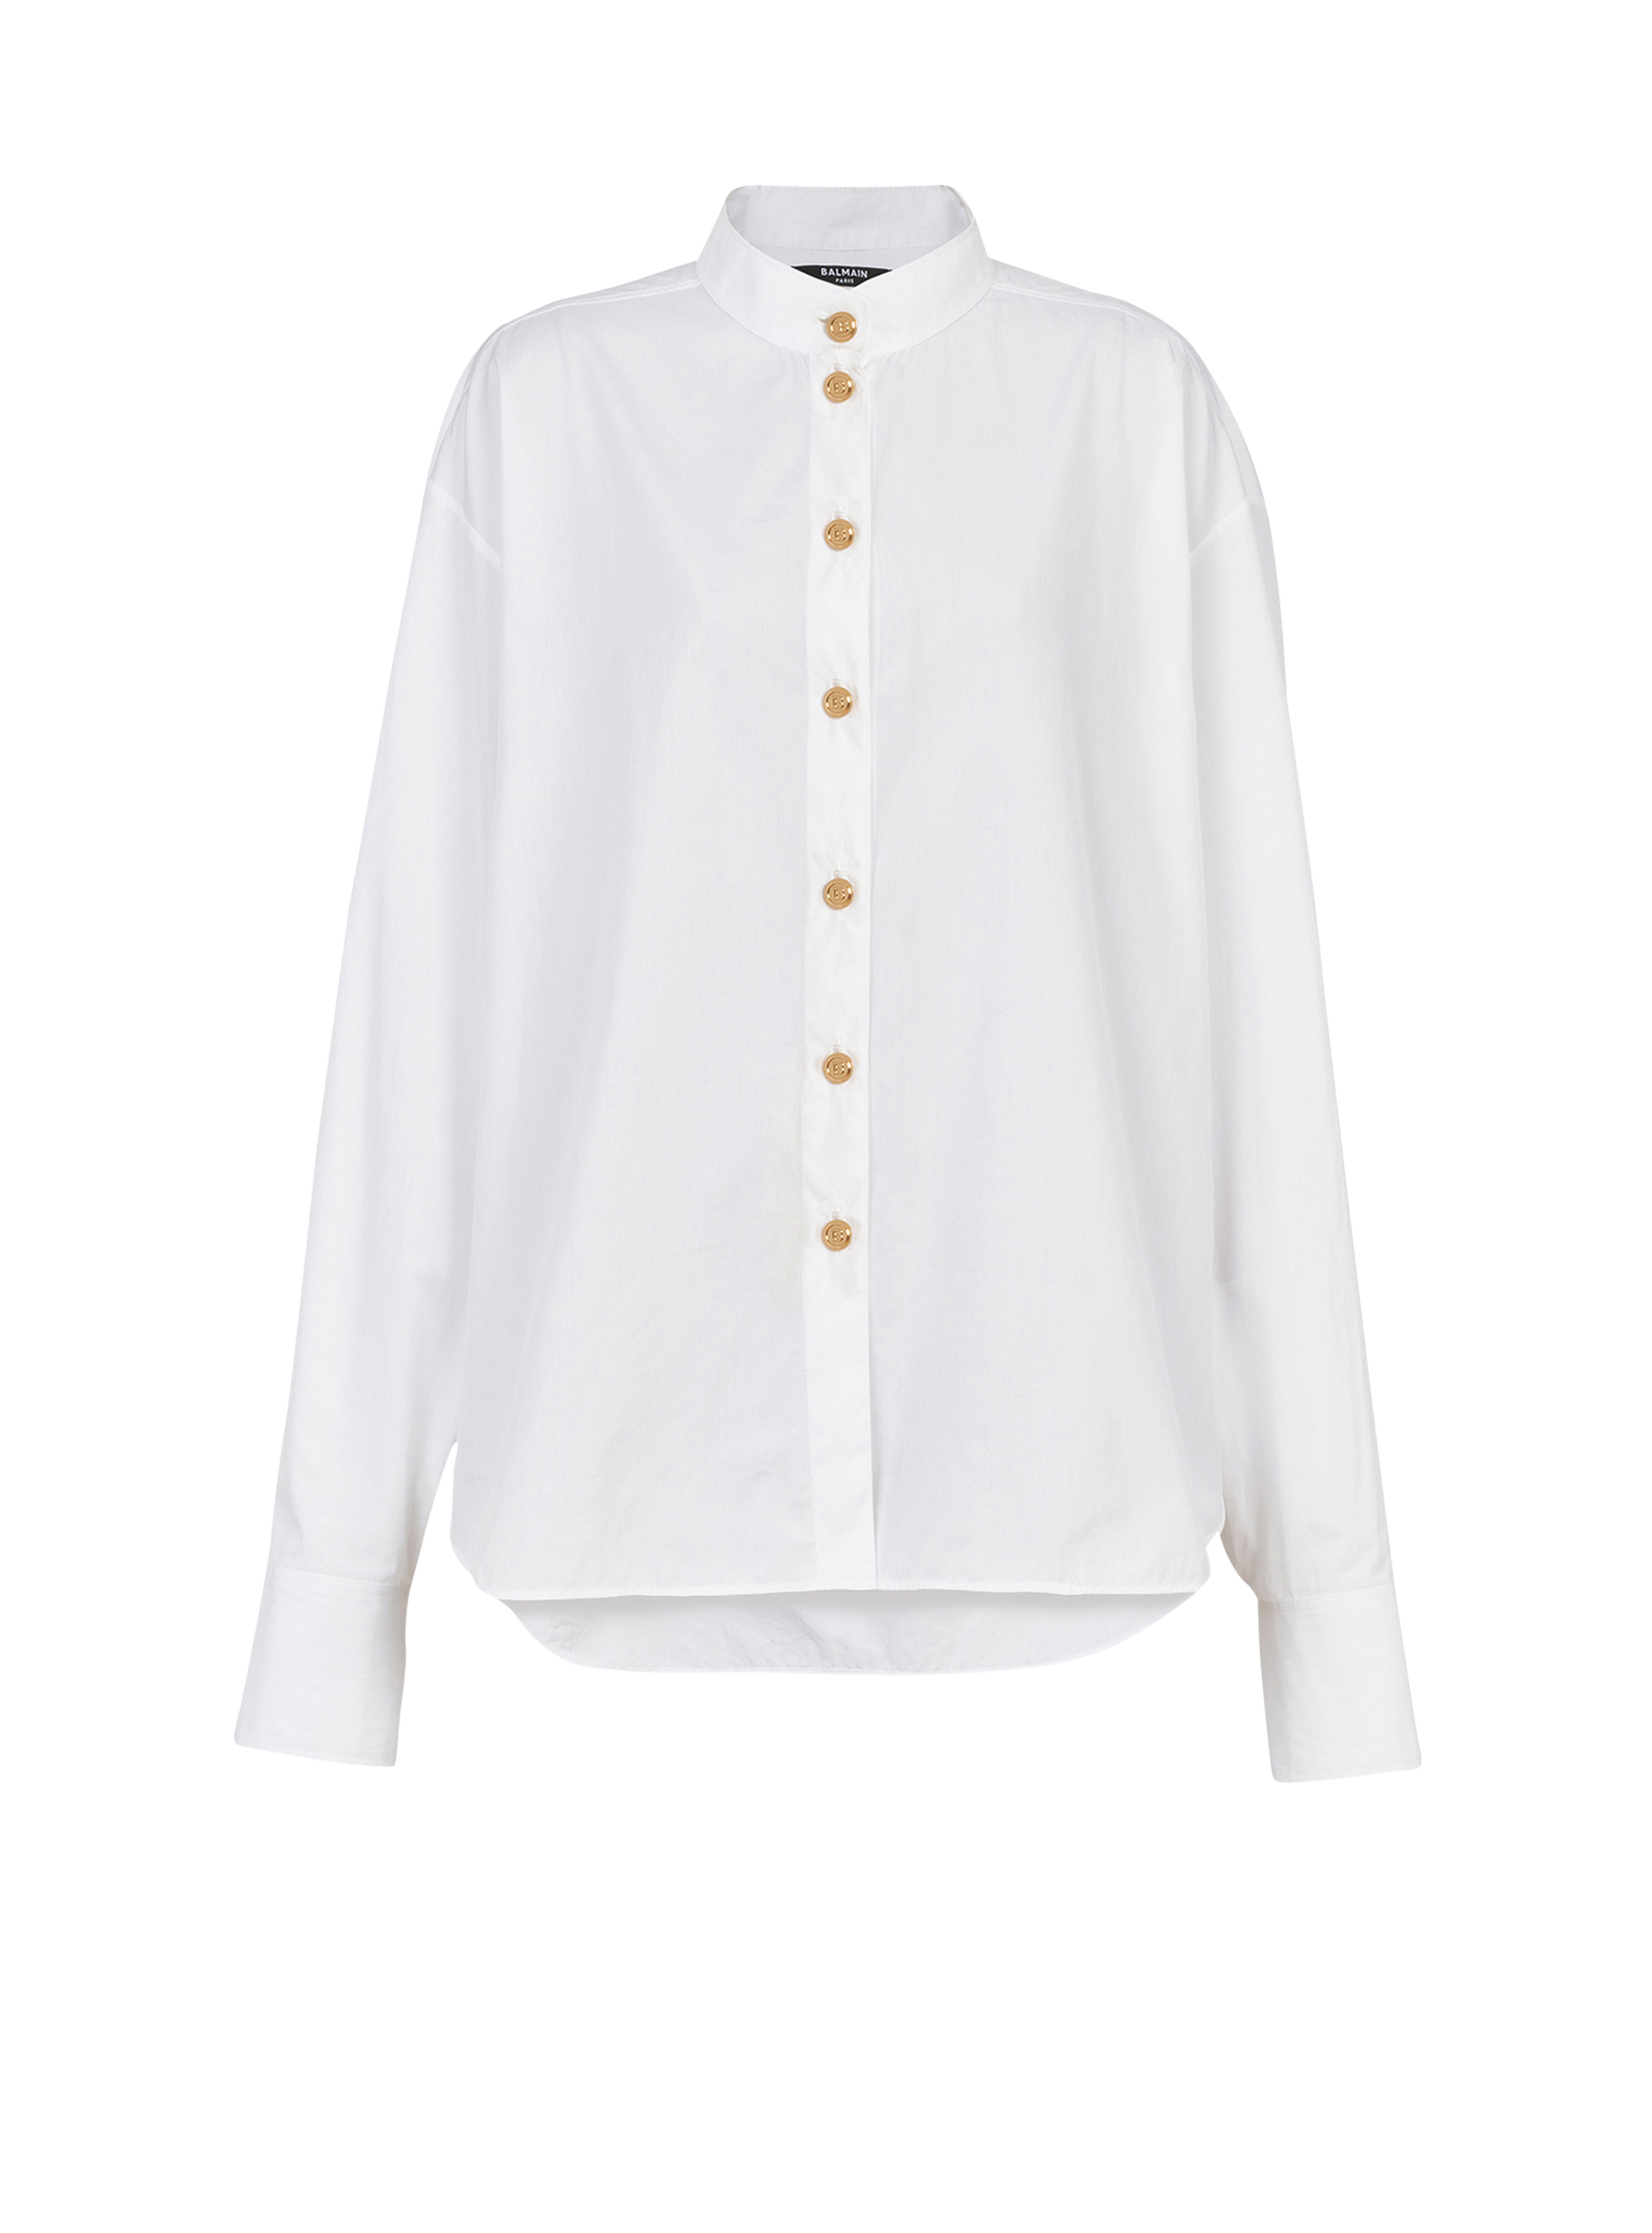 彩色真丝衬衫, white